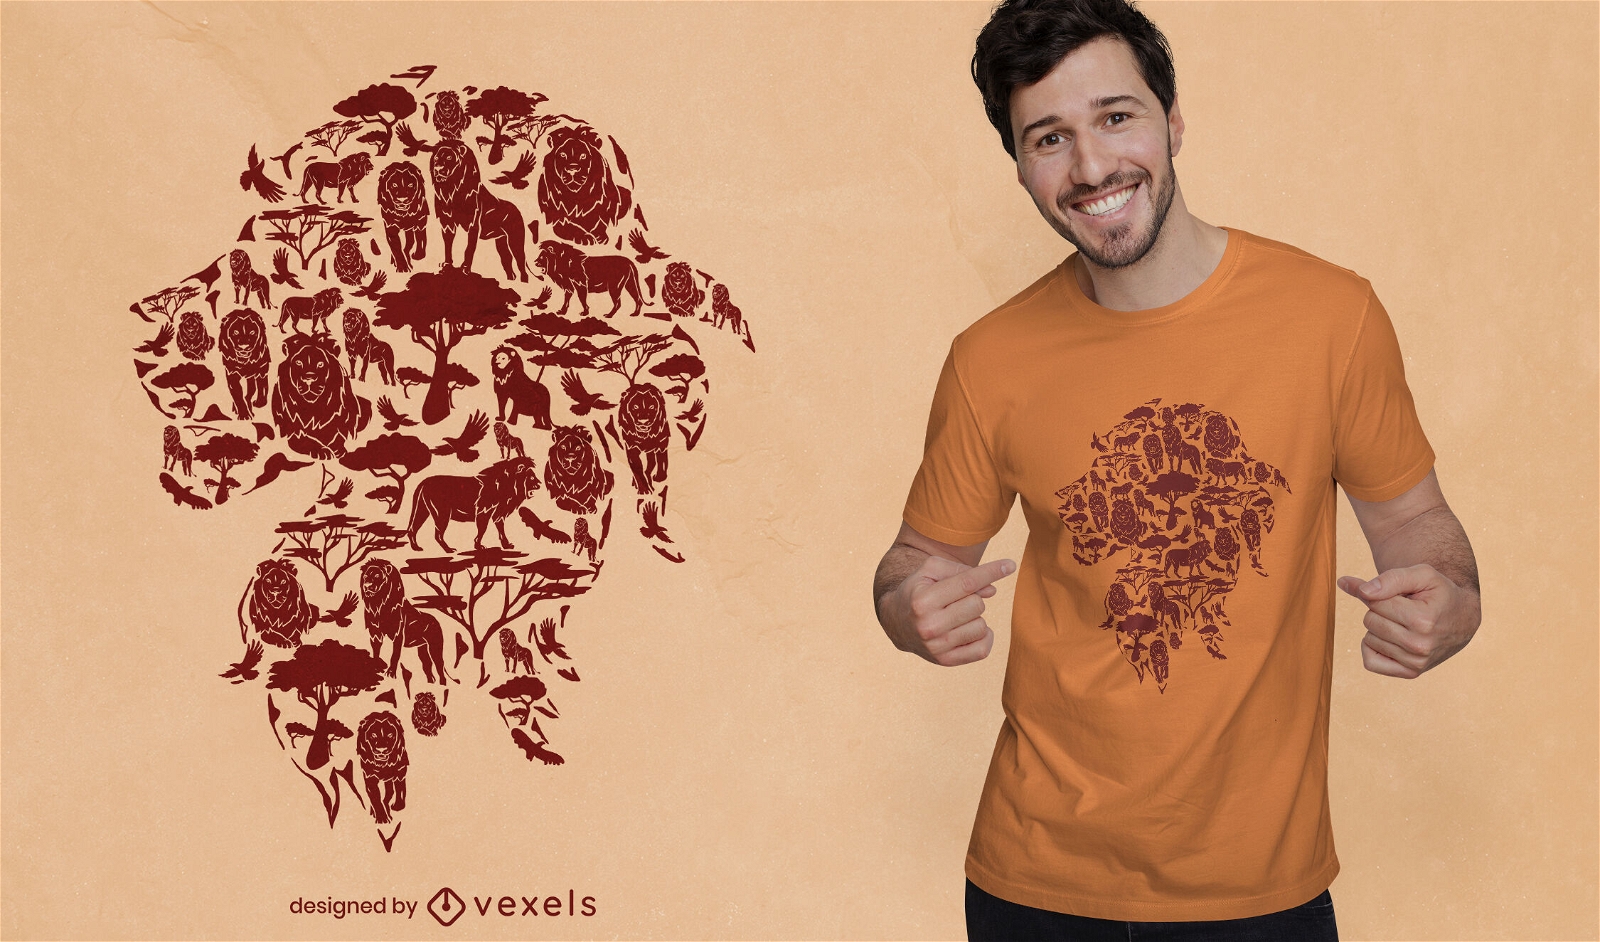 Löwe wilde Tiere im Natur-T-Shirt-Design